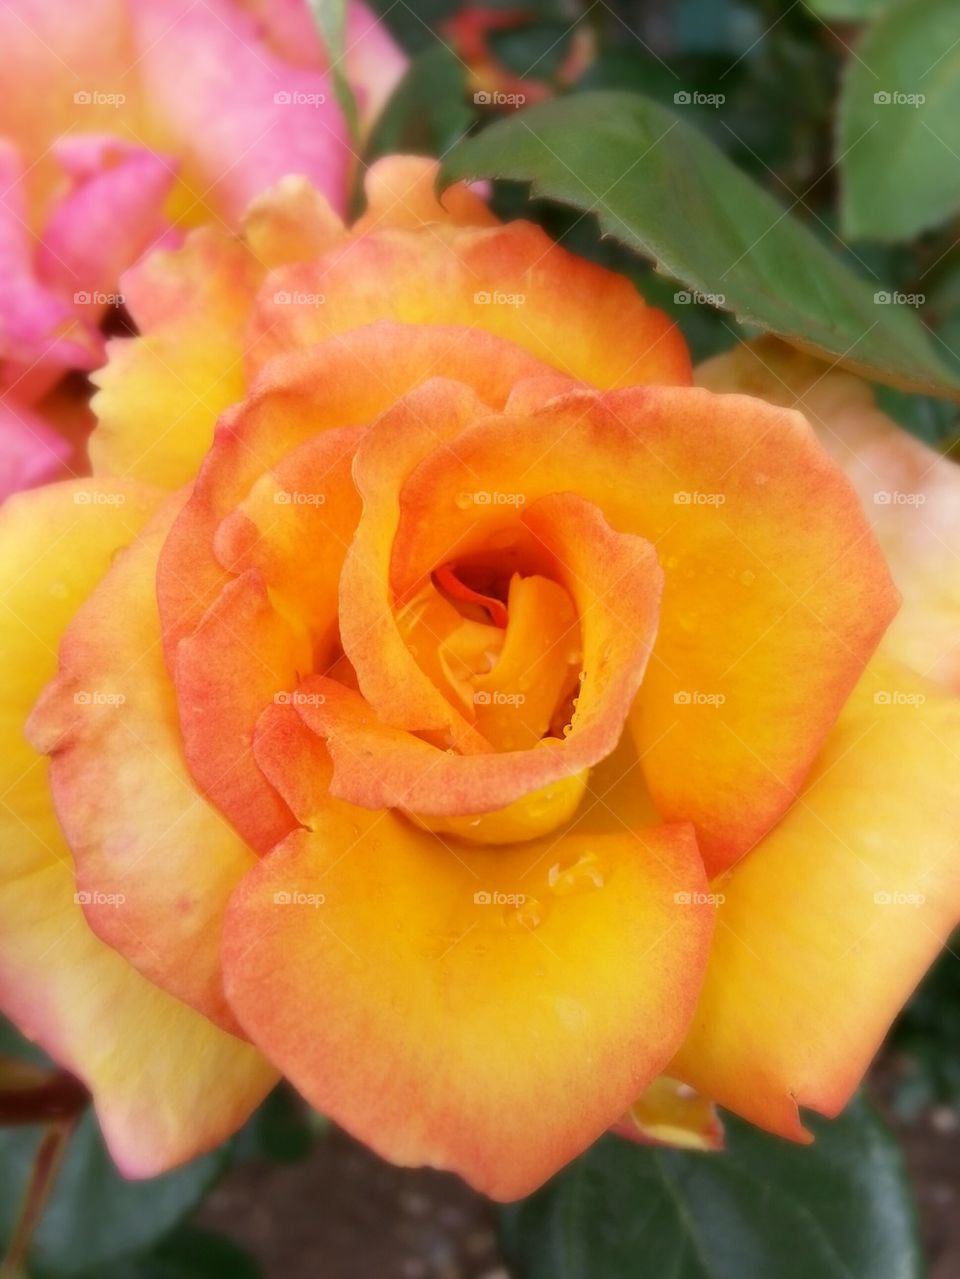 Roses Orange